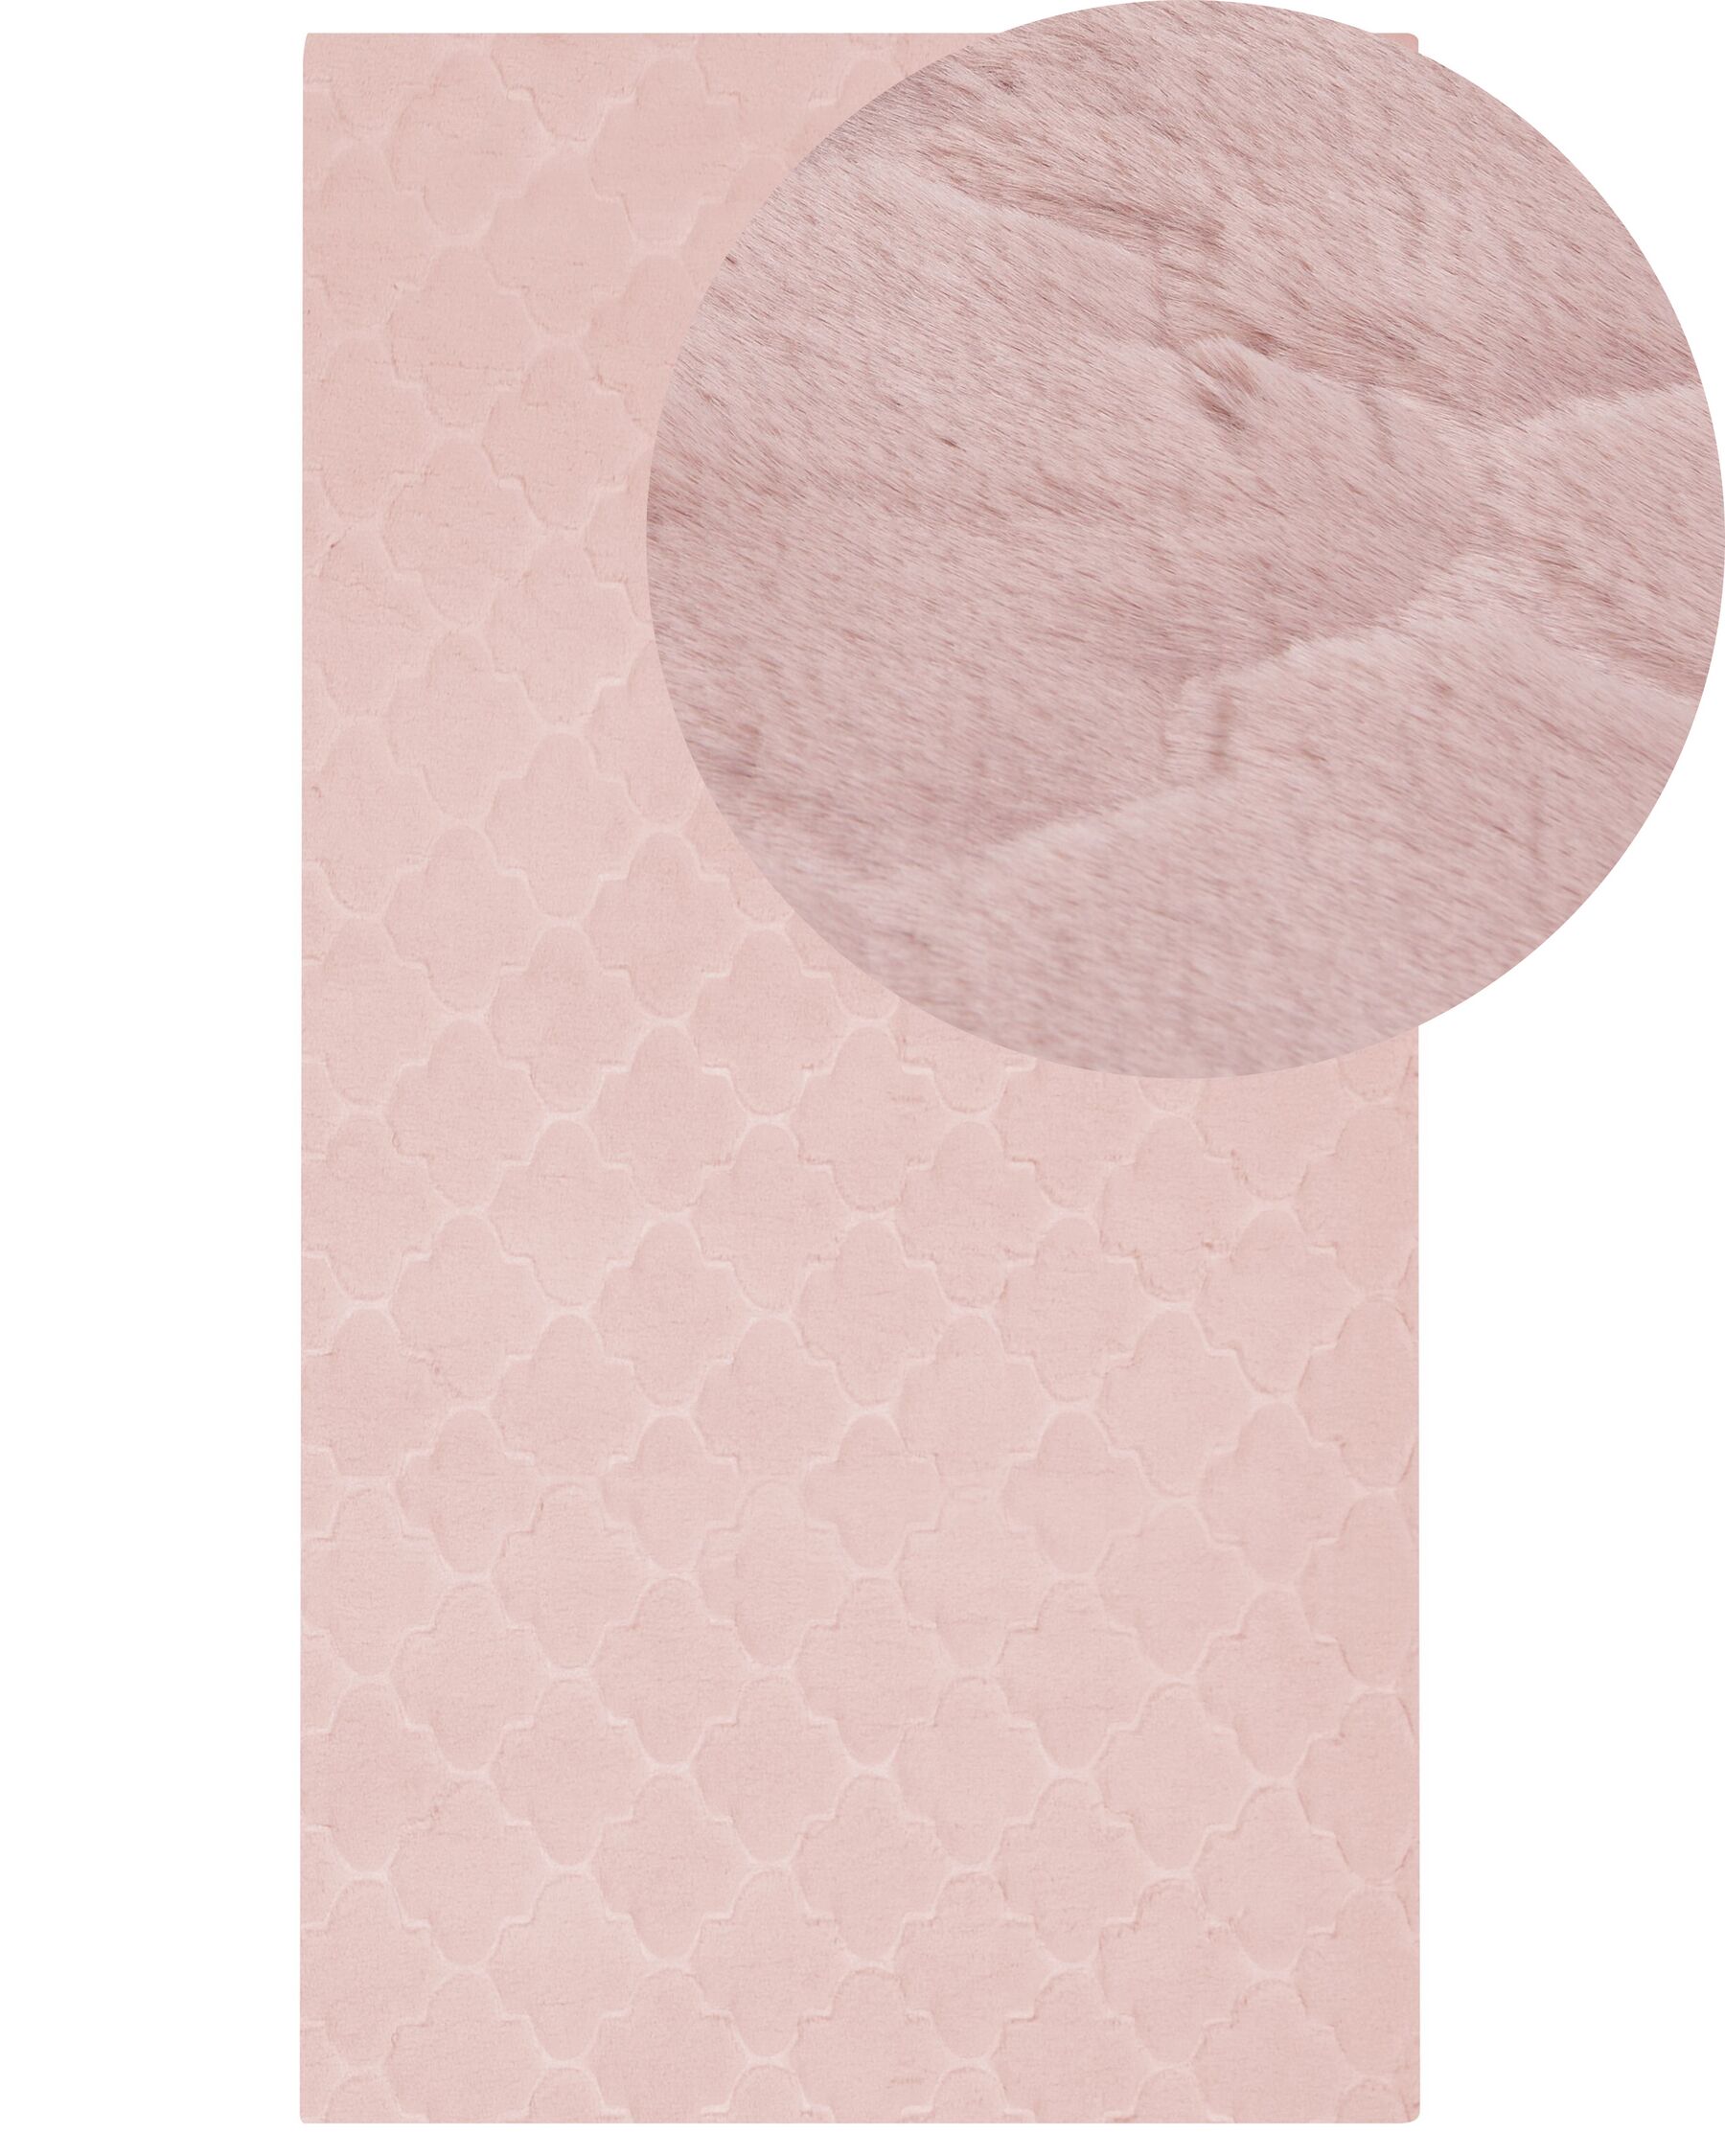 Rózsaszín műnyúlszőrme szőnyeg 80 x 150 cm GHARO_866727